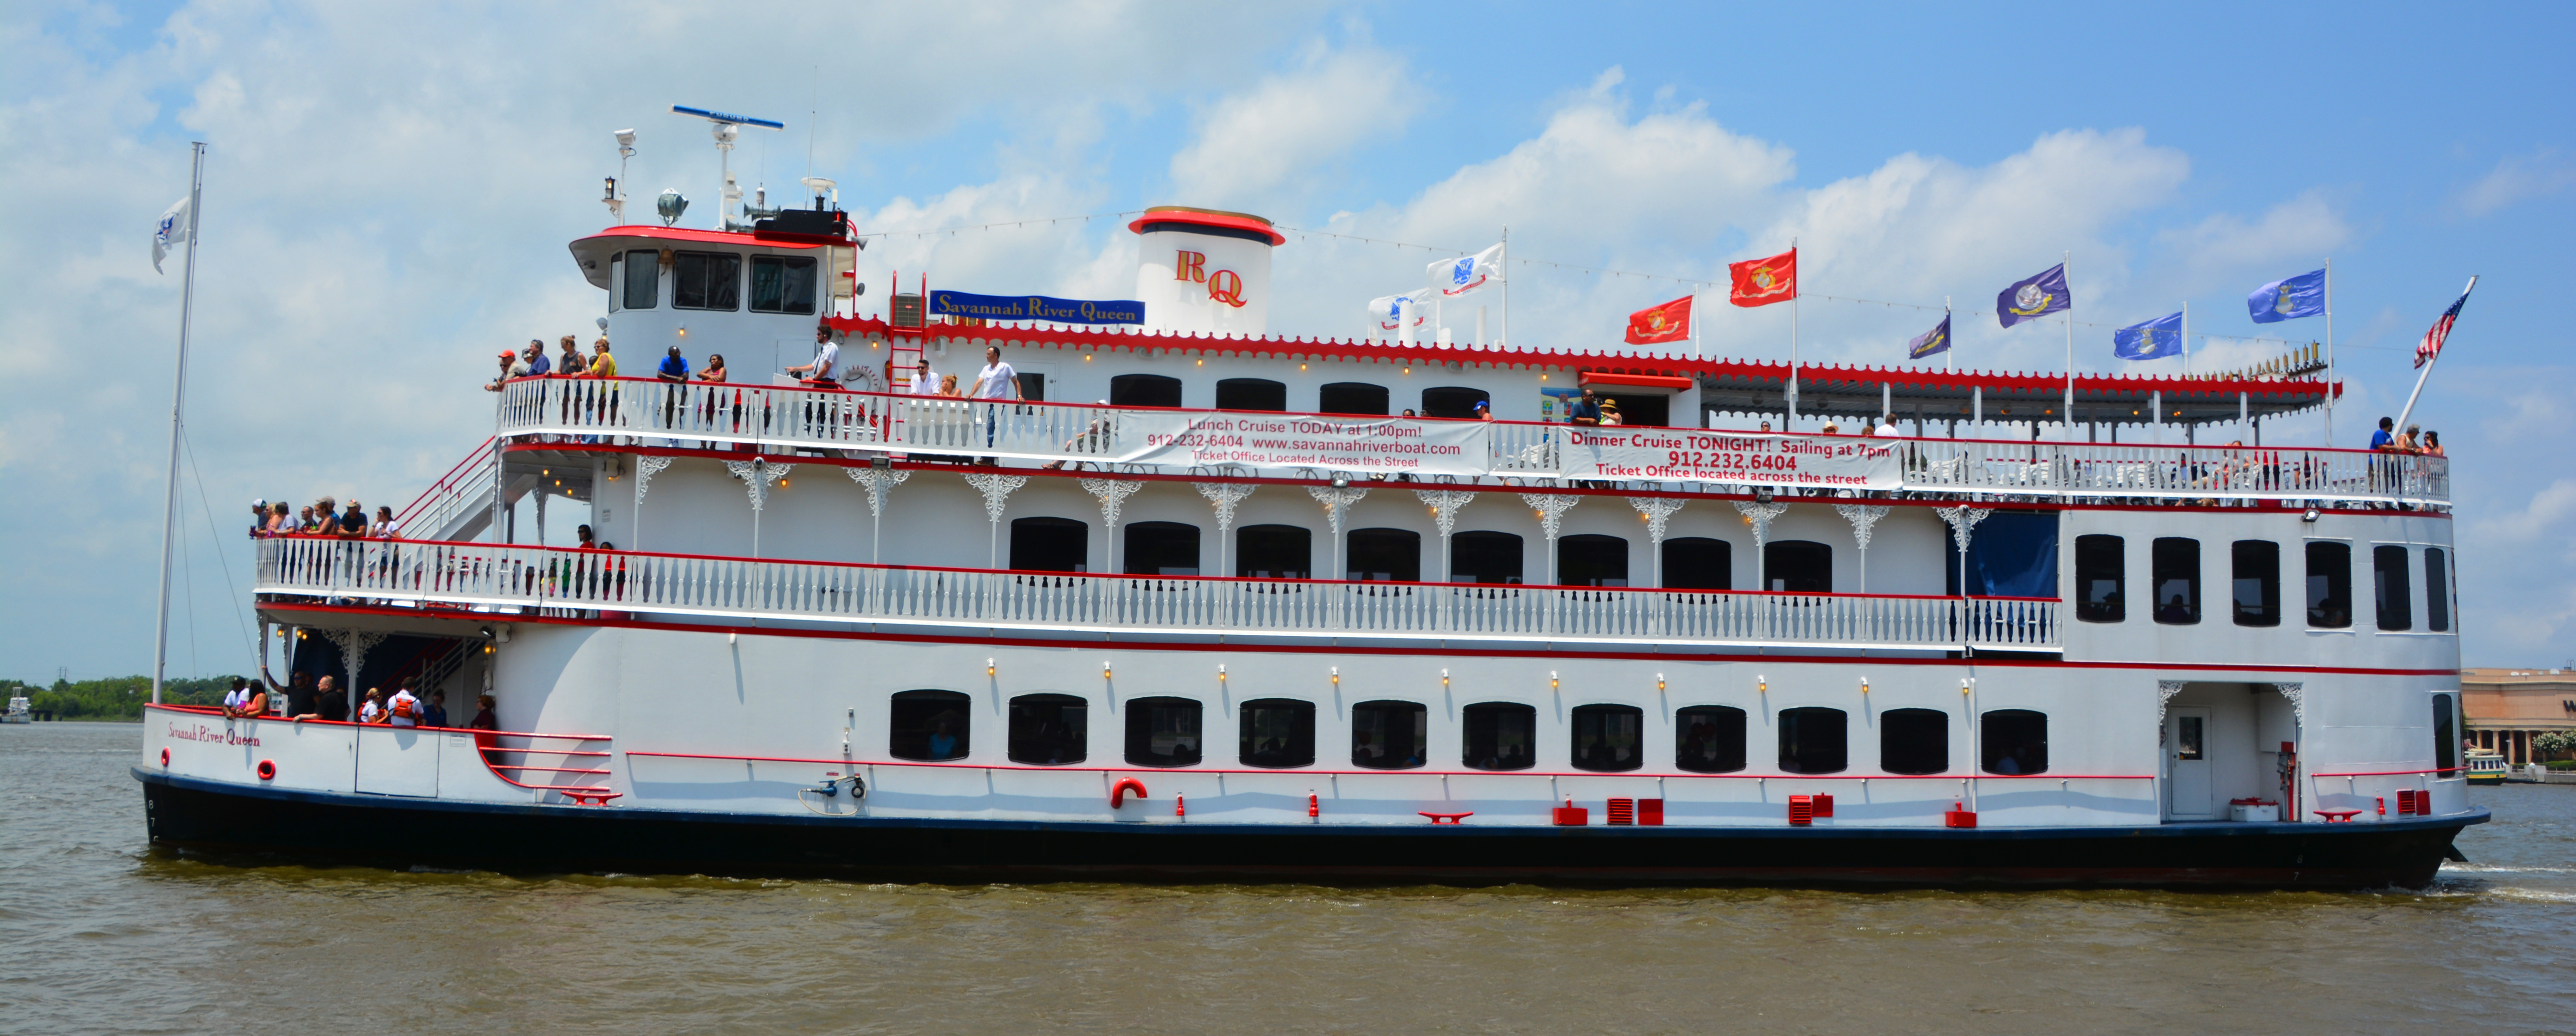 Wedding Options for a Savannah Family Vacation - Savannah Riverboat